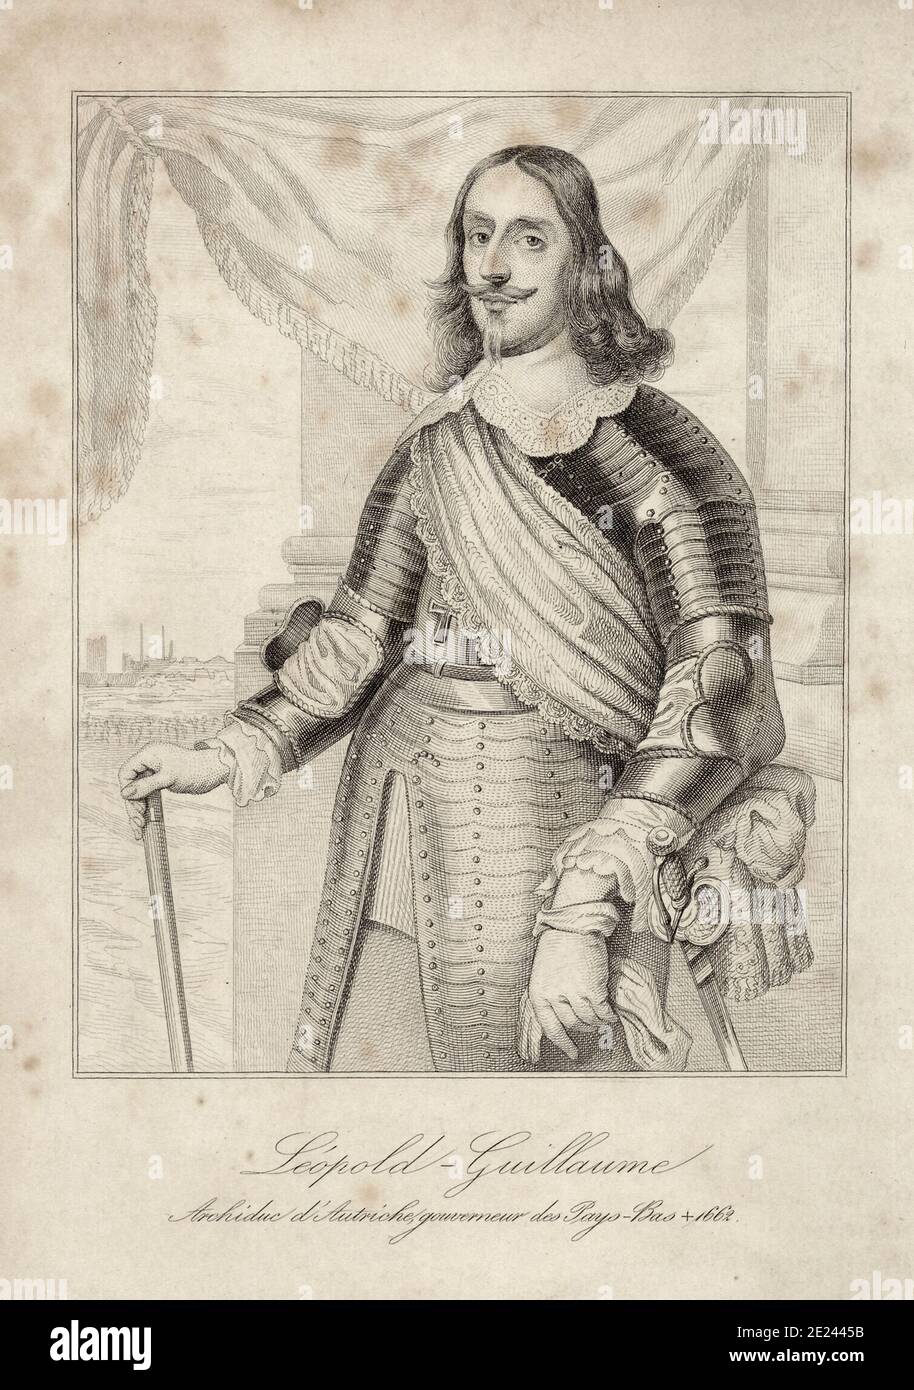 Incisione di Arciduca Leopoldo Guglielmo d'Austria (1614 - 1662) era un austriaco comandante militare, Governatore dei Paesi Bassi spagnoli dal 1647 a 16 Foto Stock